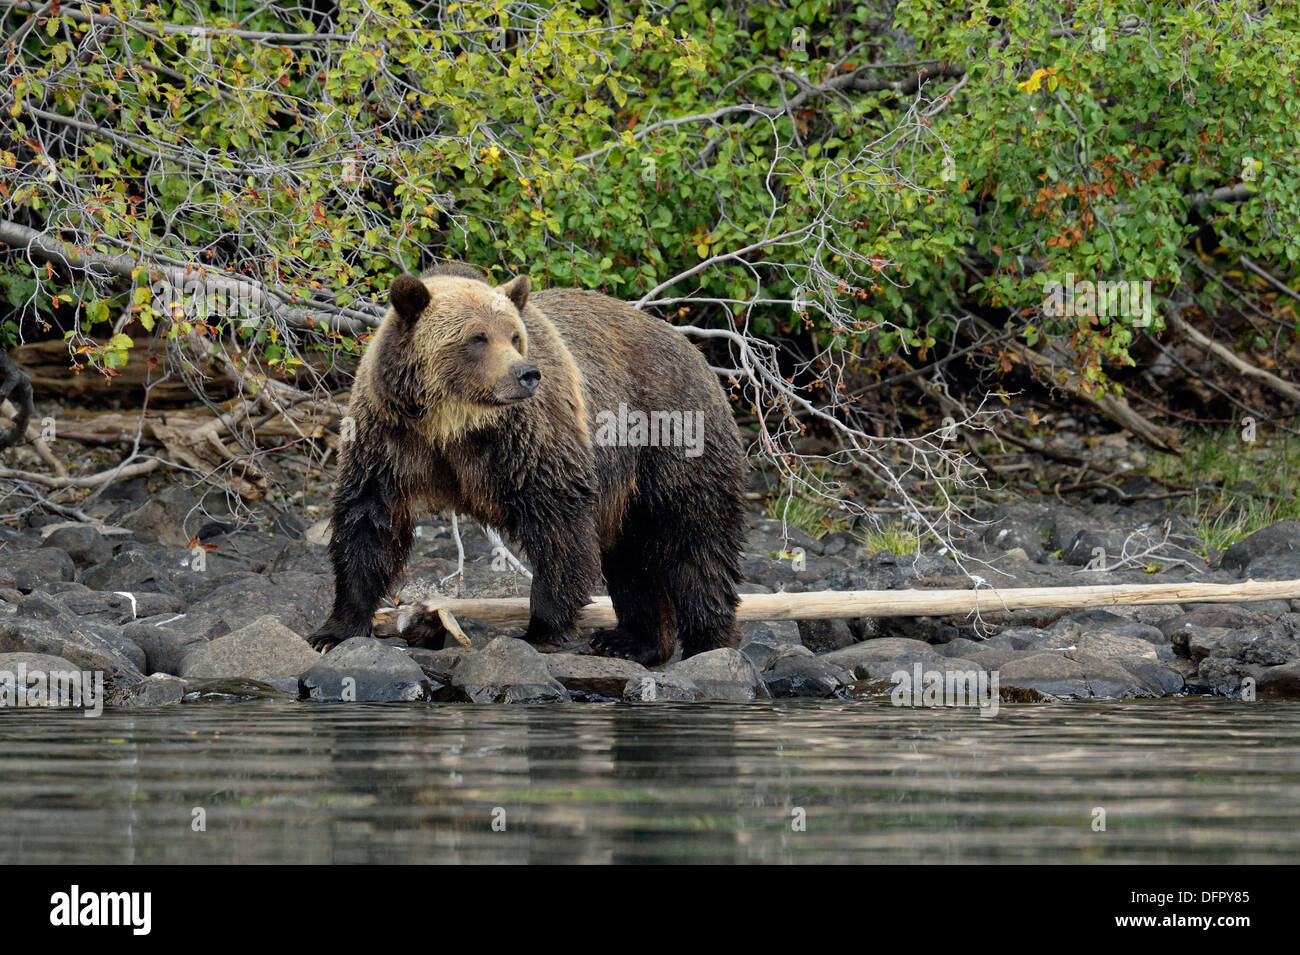 Ours brun, Ursus arctos, chasse saumon le long du littoral d'une rivière à saumons, Chilcotin Wilderness, l'intérieur de la Colombie-Britannique, Canada Banque D'Images